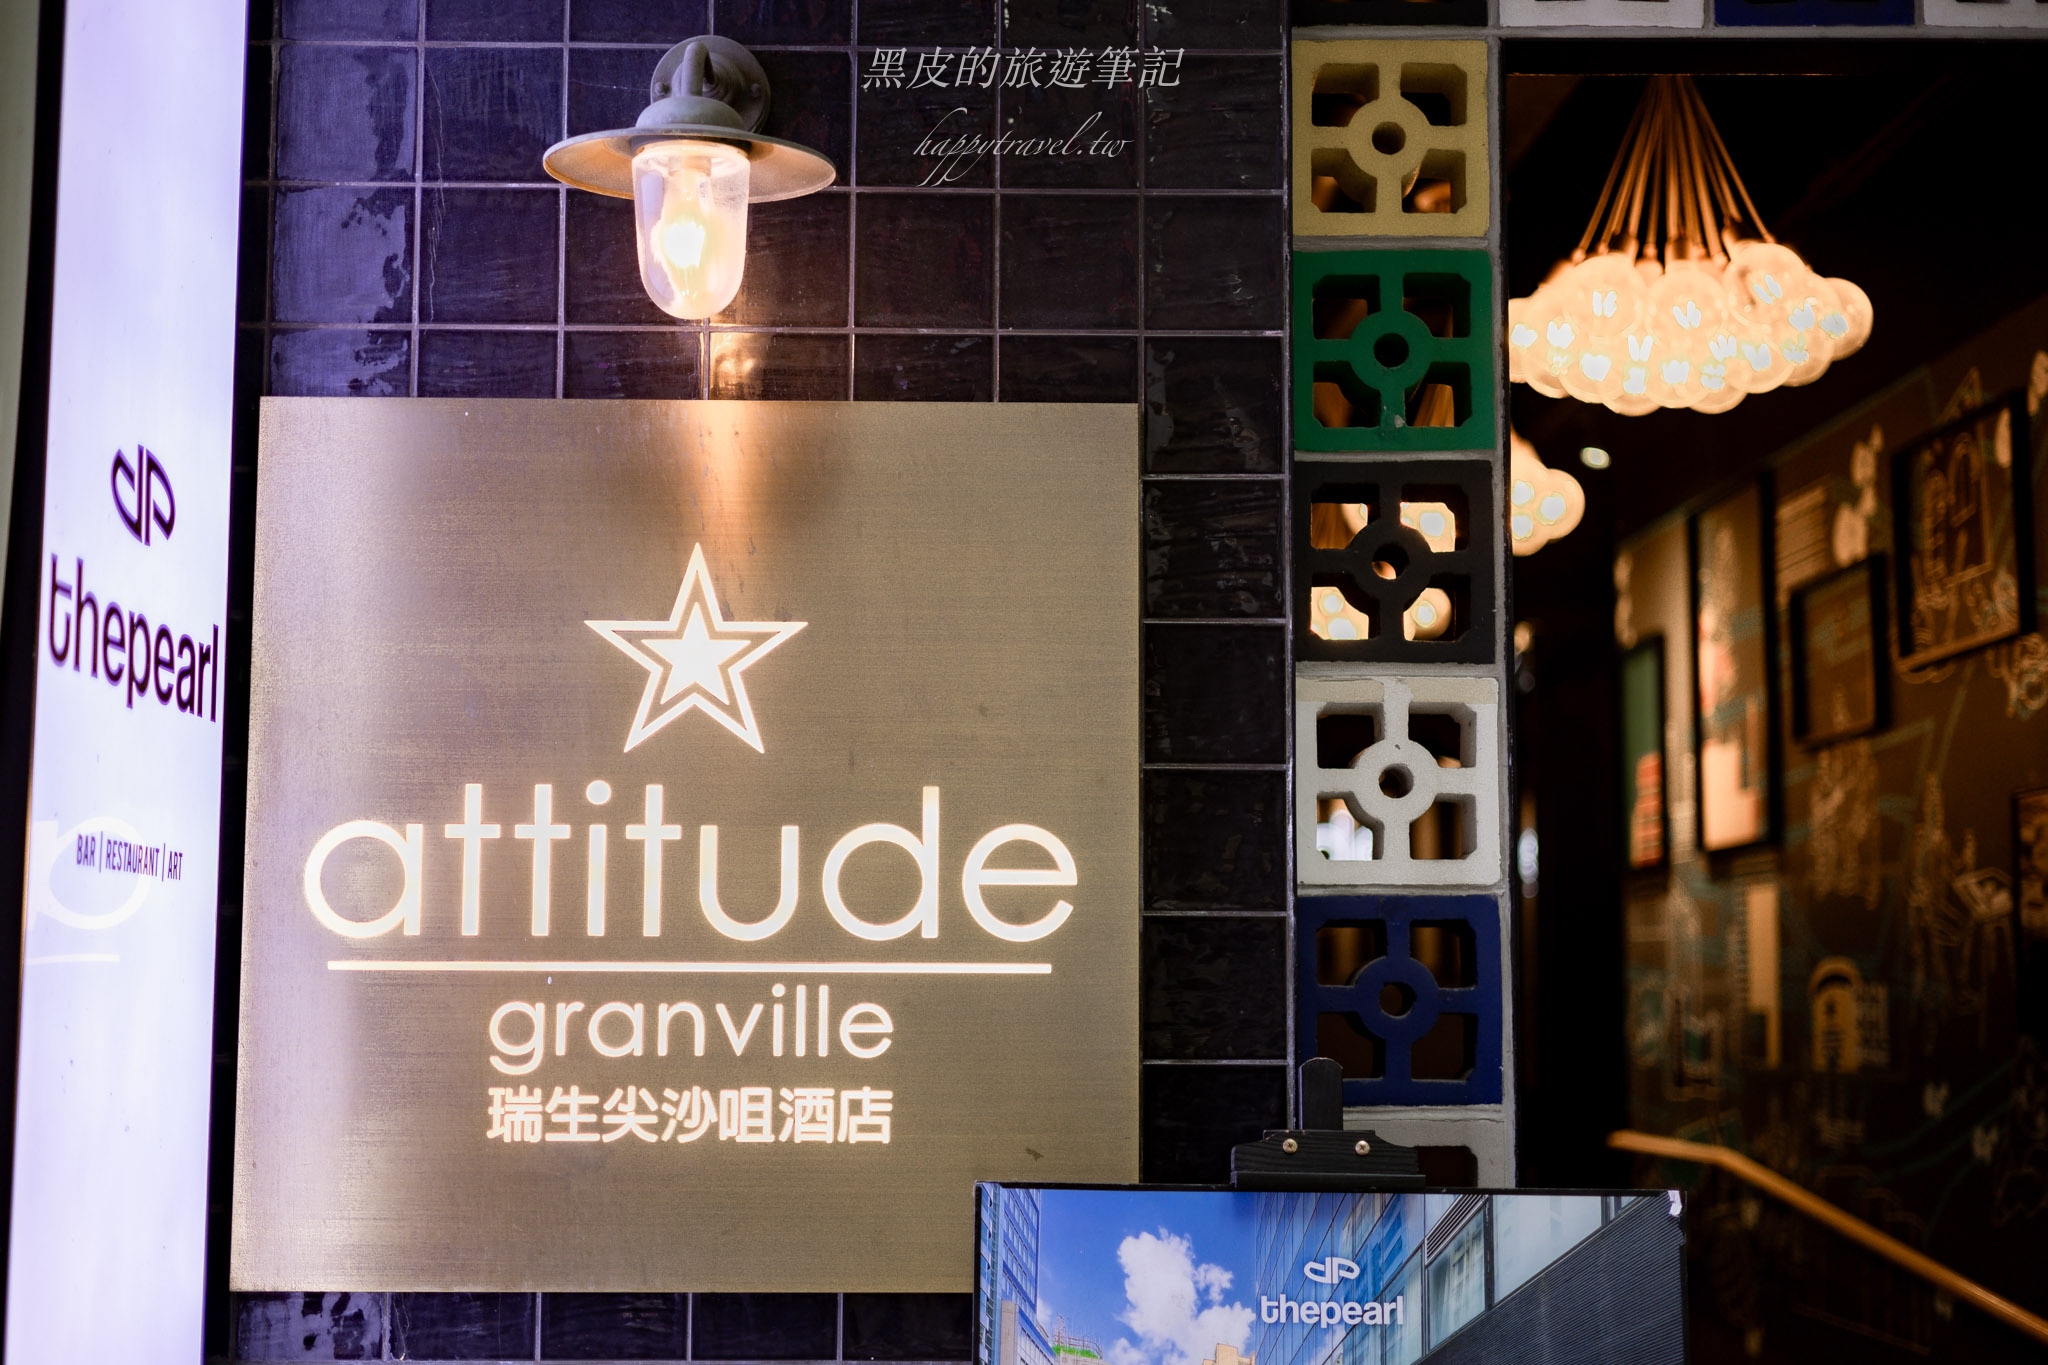 【香港飯店】瑞生尖沙咀酒店Attitude on granville。機能性超高的尖沙咀飯店，價格平實、交通便利絕佳